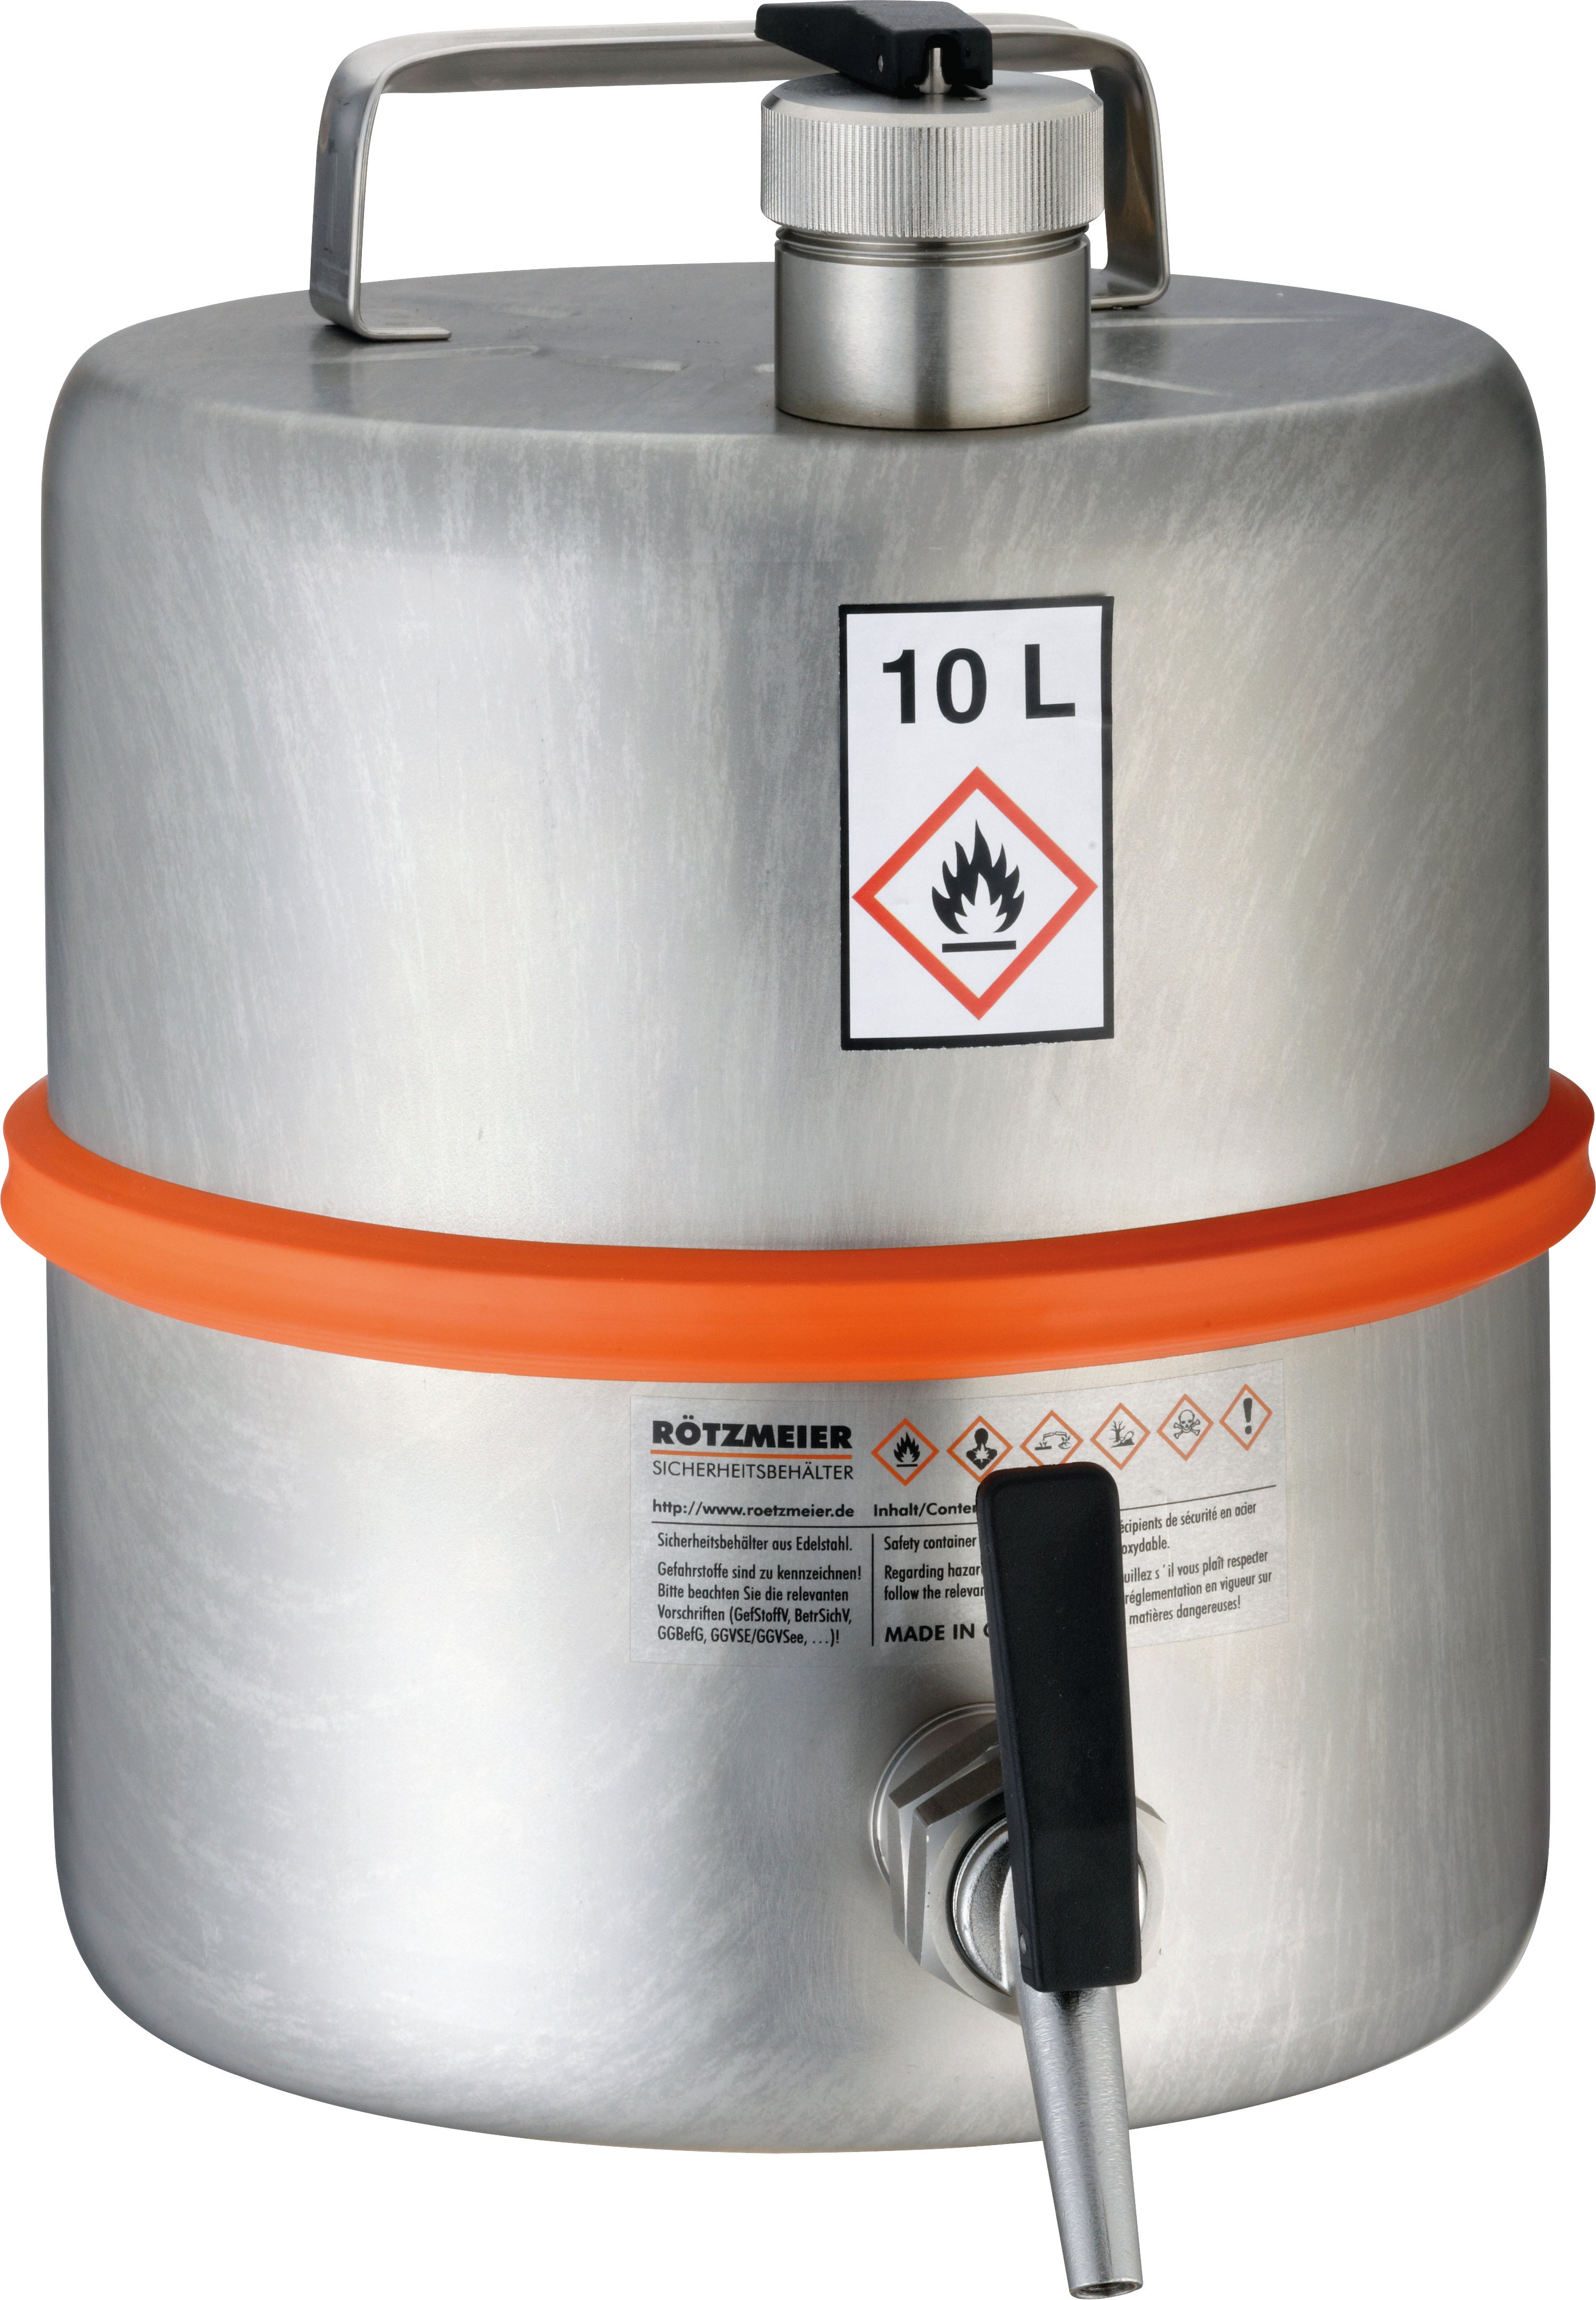 Récipient de sécurité debout acier inoxydable (1.4571), robinet, levier de ventilation, acier inoxydable 1.4571 matt